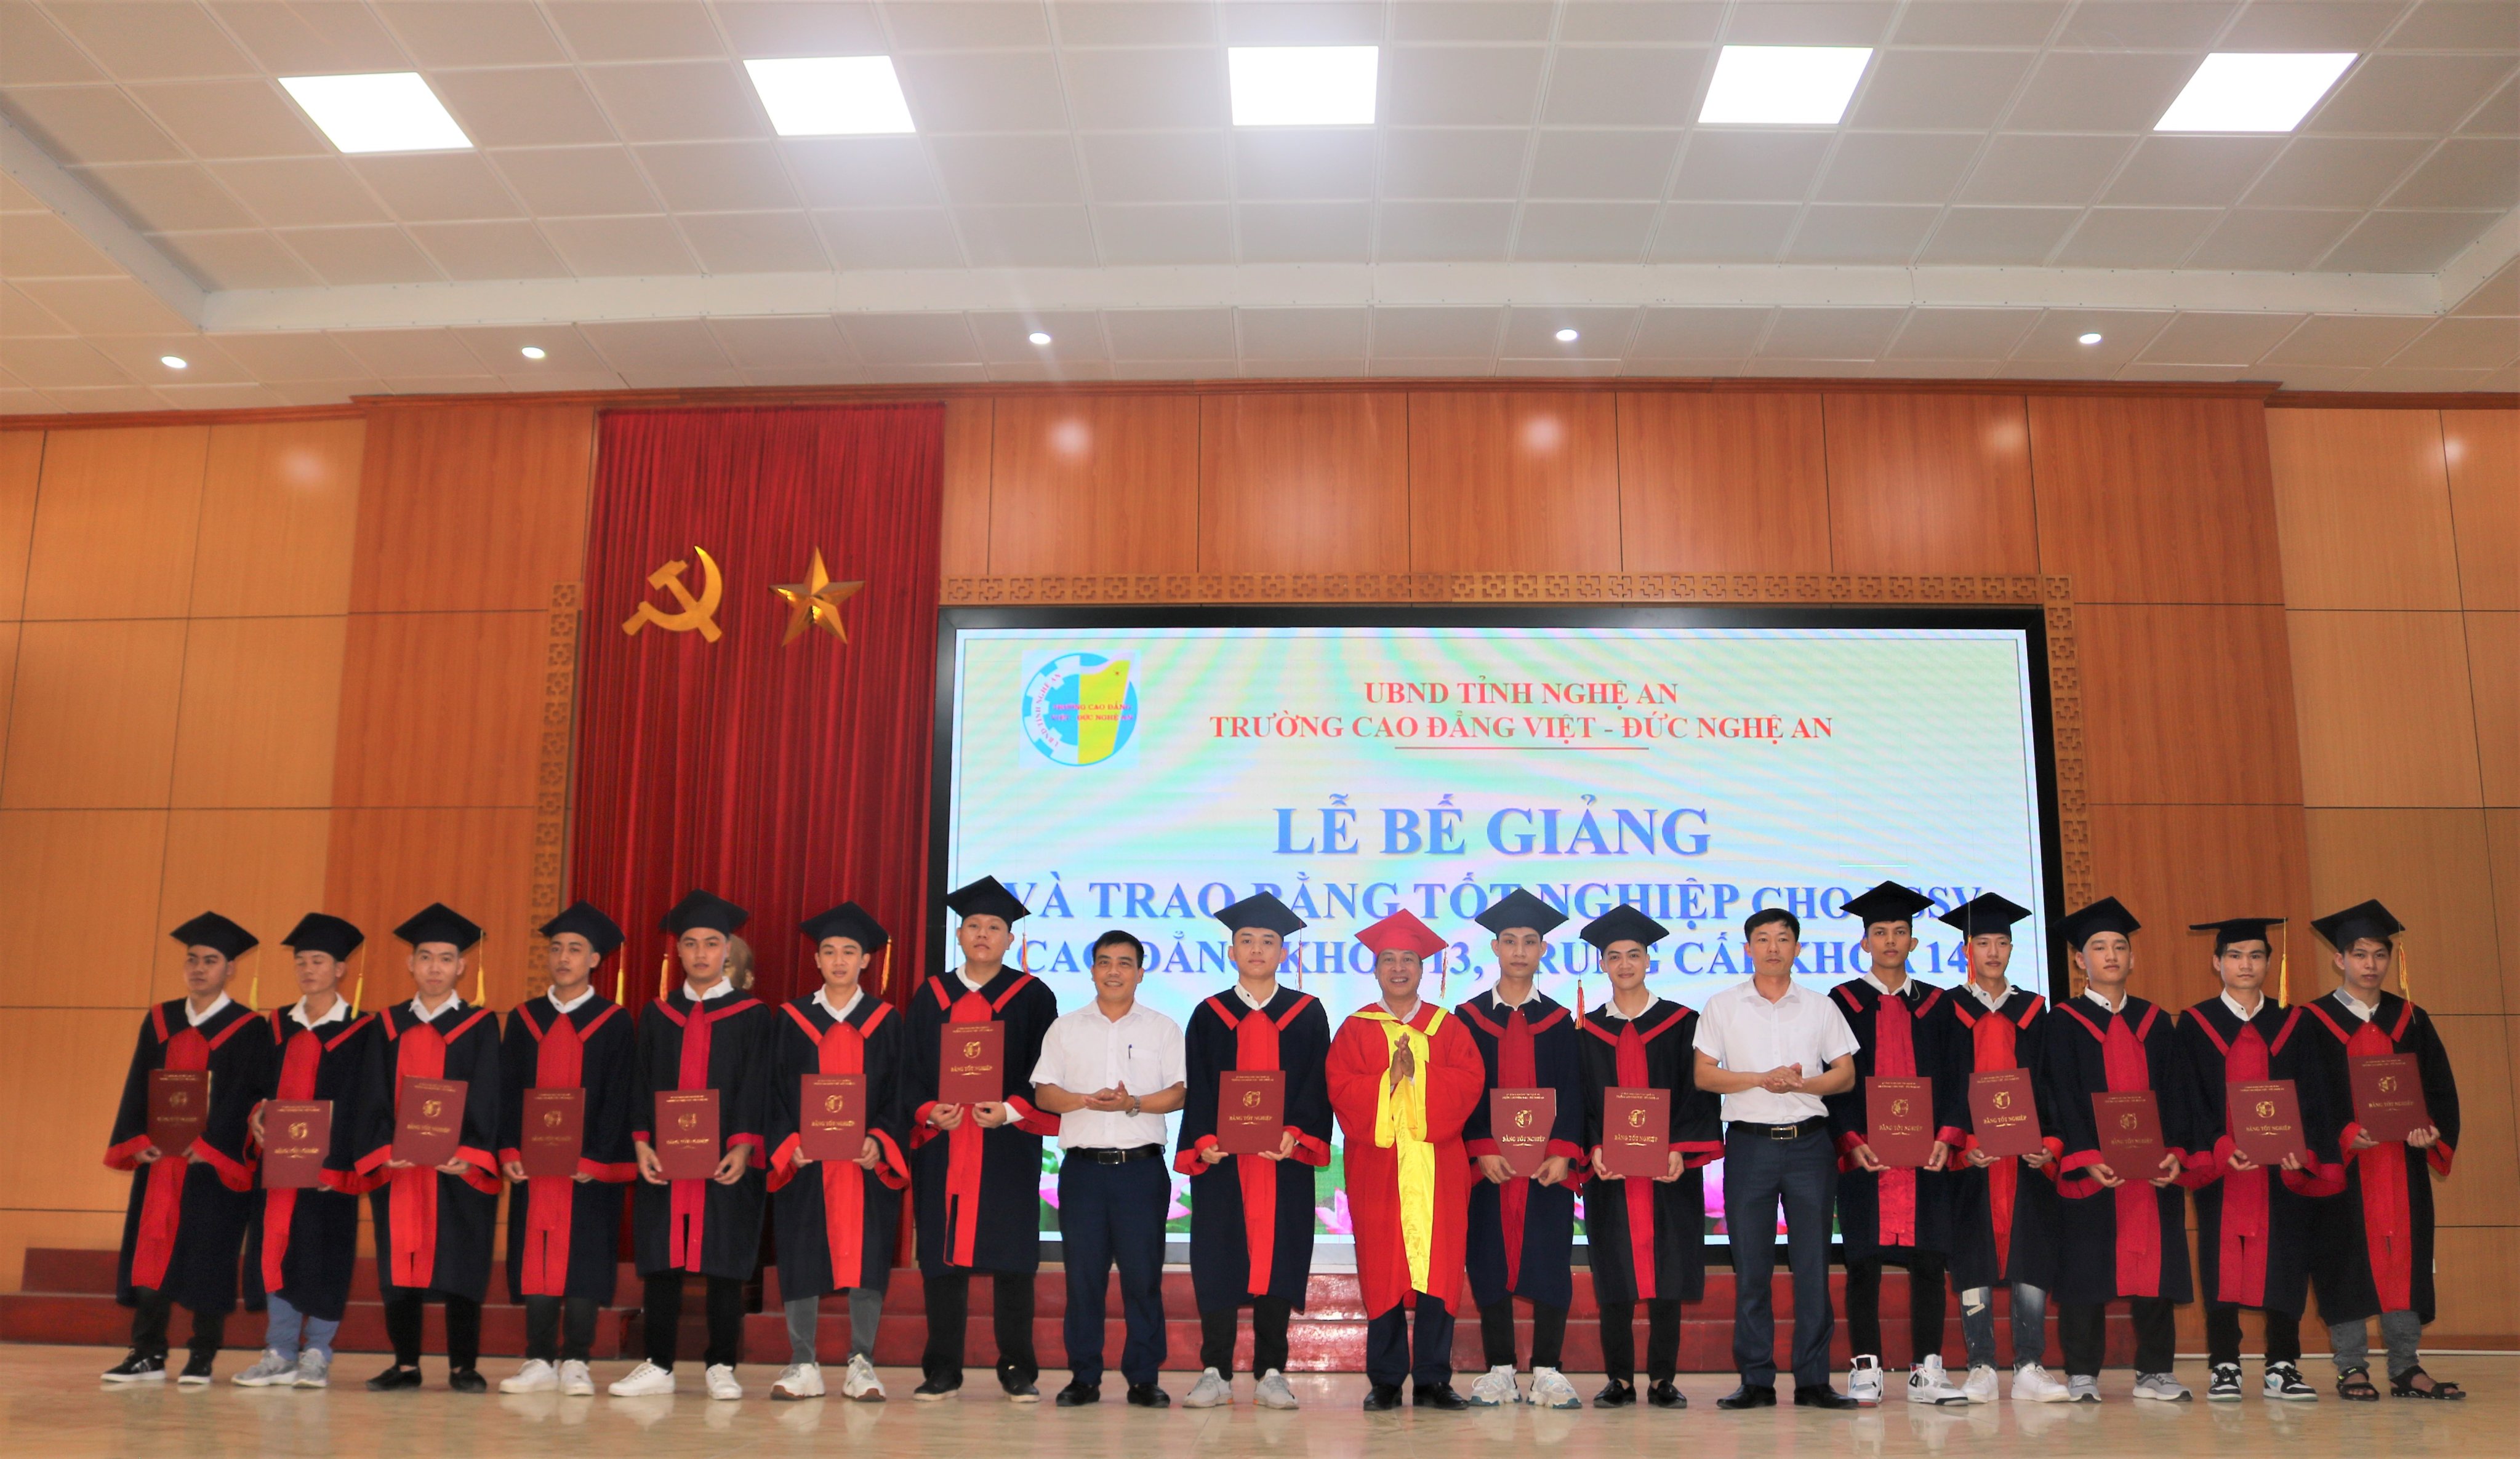 Trường Cao đẳng Việt – Đức Nghệ An tổ chức Lễ Bế giảng và trao bằng tốt nghiệp cho sinh viên Cao đẳng Khóa 13 và học sinh Trung cấp Khóa 14